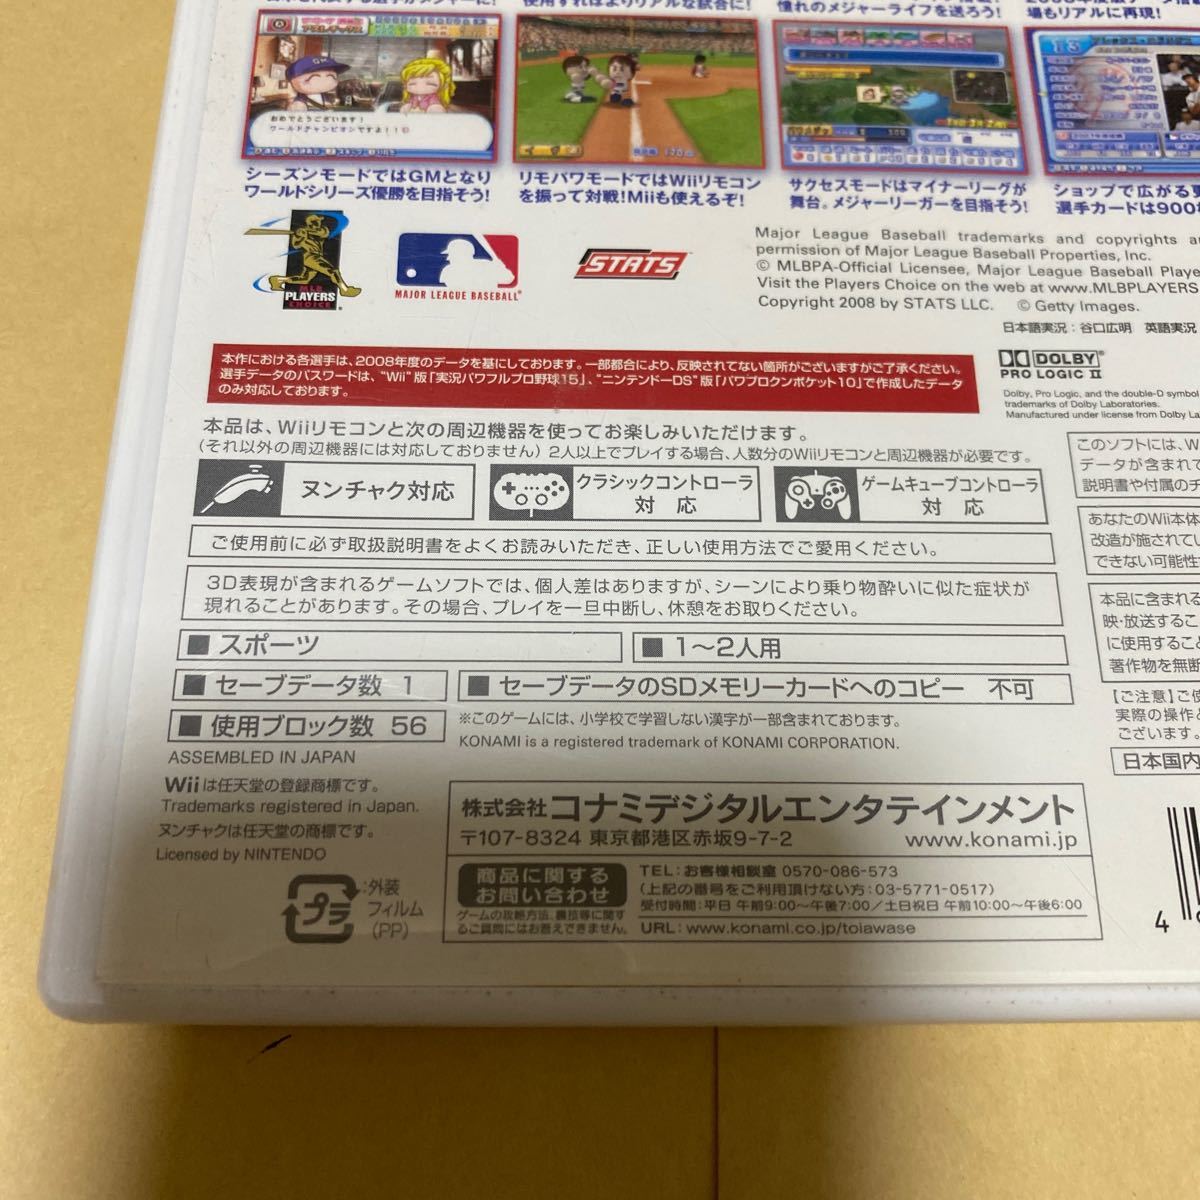 NewスーパーマリオブラザーズWiiと実況パワフルメジャーリーグ3 Wii